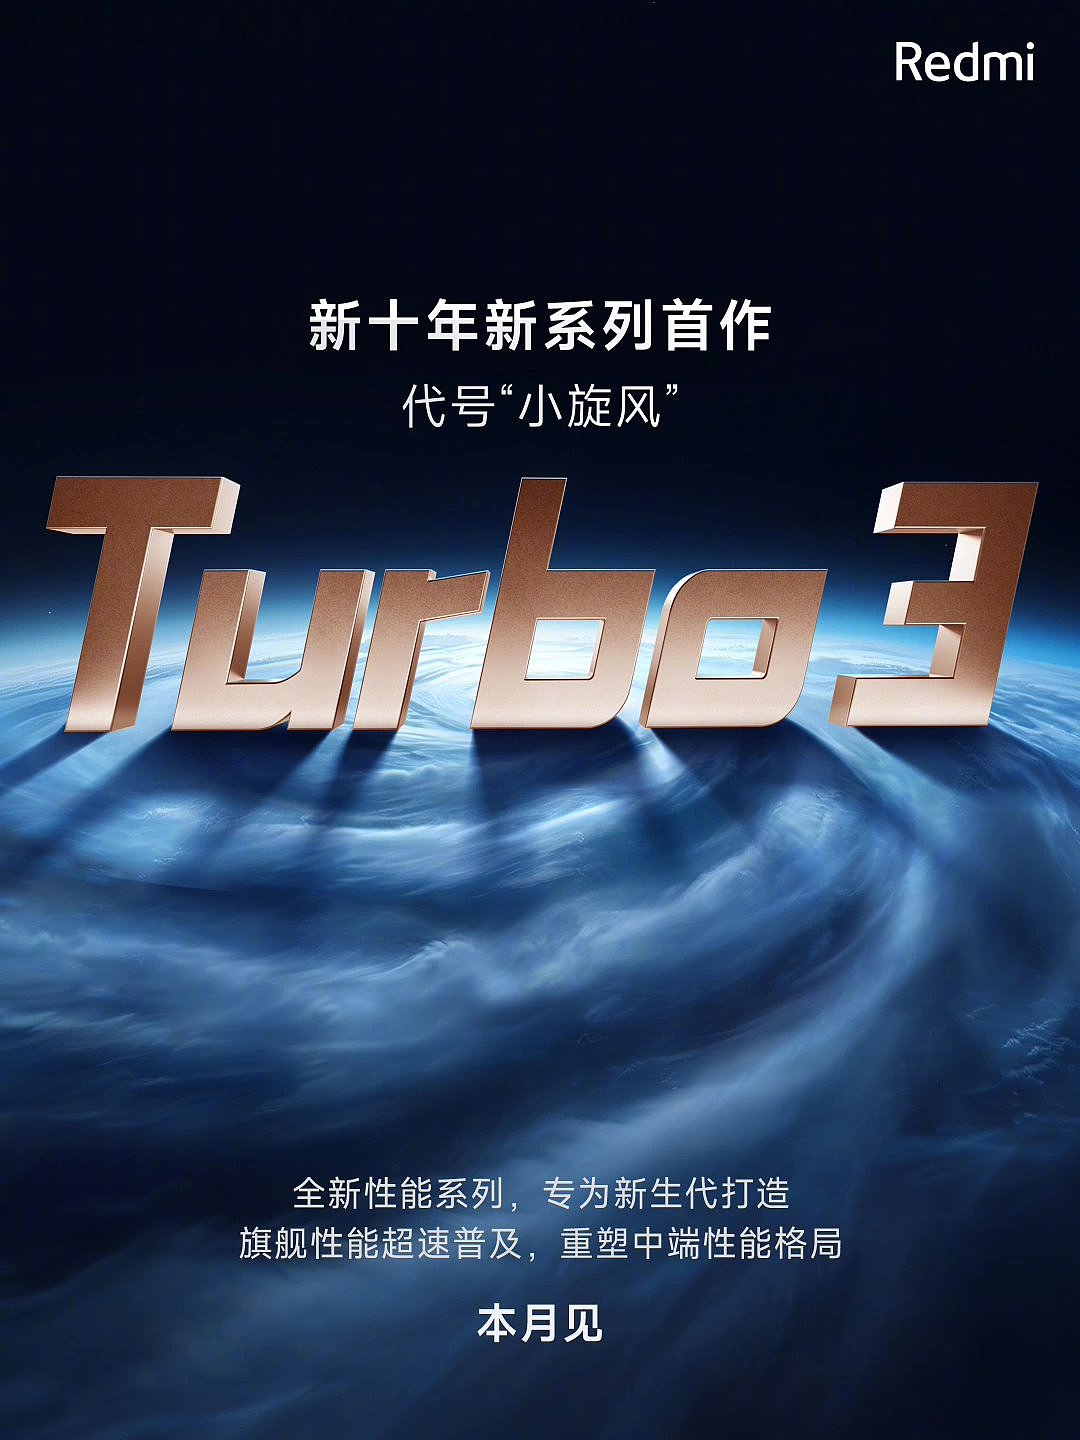 小米王腾回应 Redmi 为何推出新系列 Turbo：希望在中端档位开展旗舰性能普及旋风 - 2